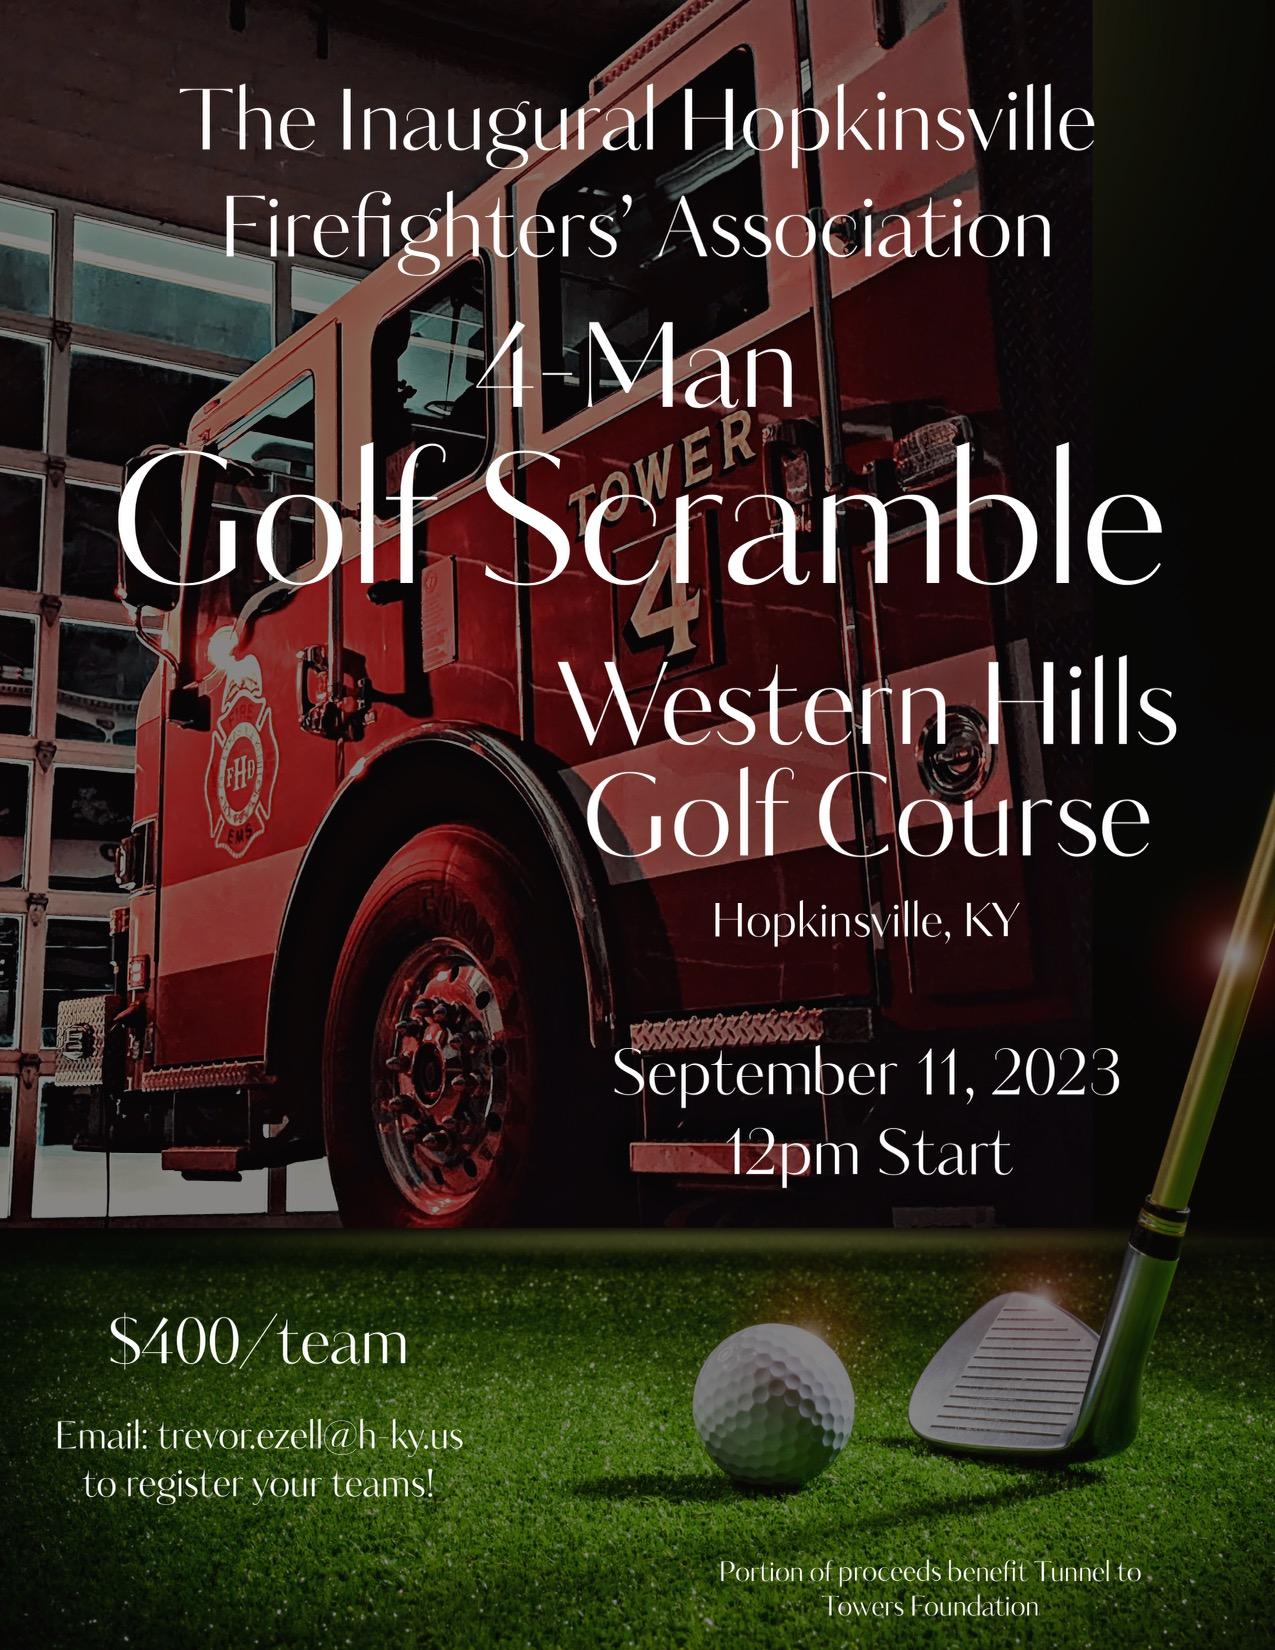 Hopkinsville Firefighter’s Association Golf Scramble